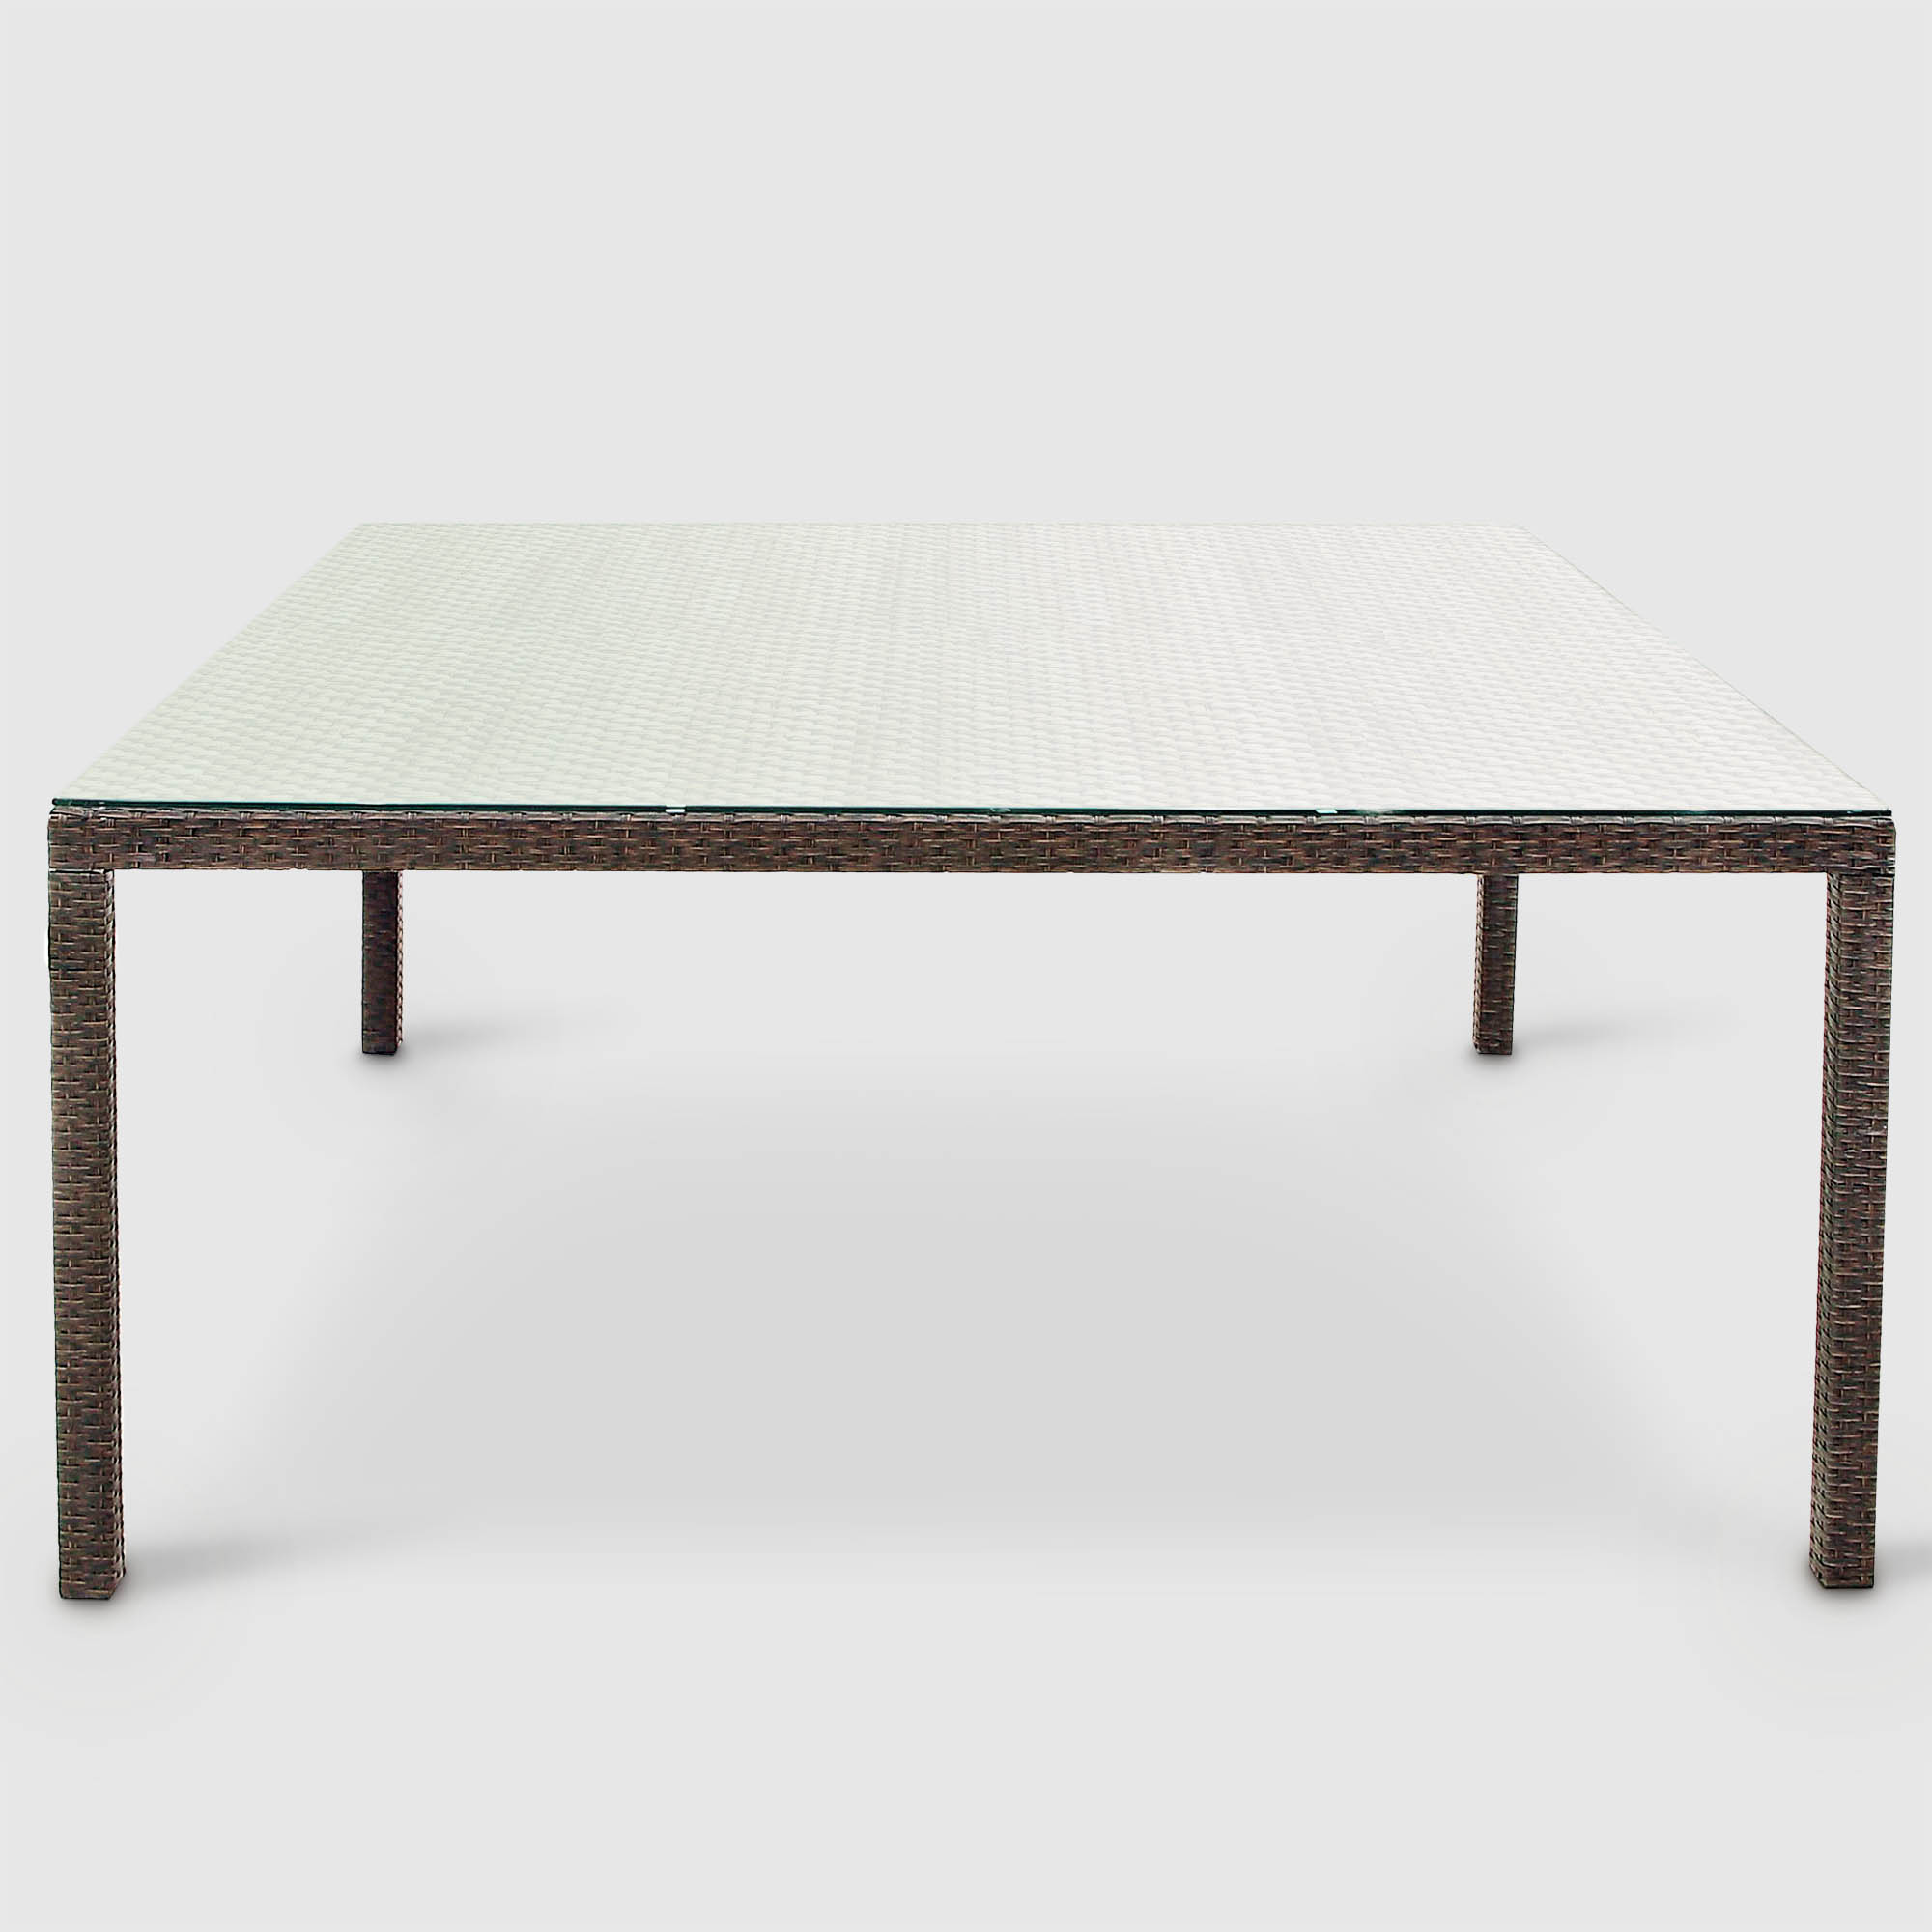 Комплект мебели Obt 9 предметов, цвет коричневый, размер 170х170х76,2 см - фото 7